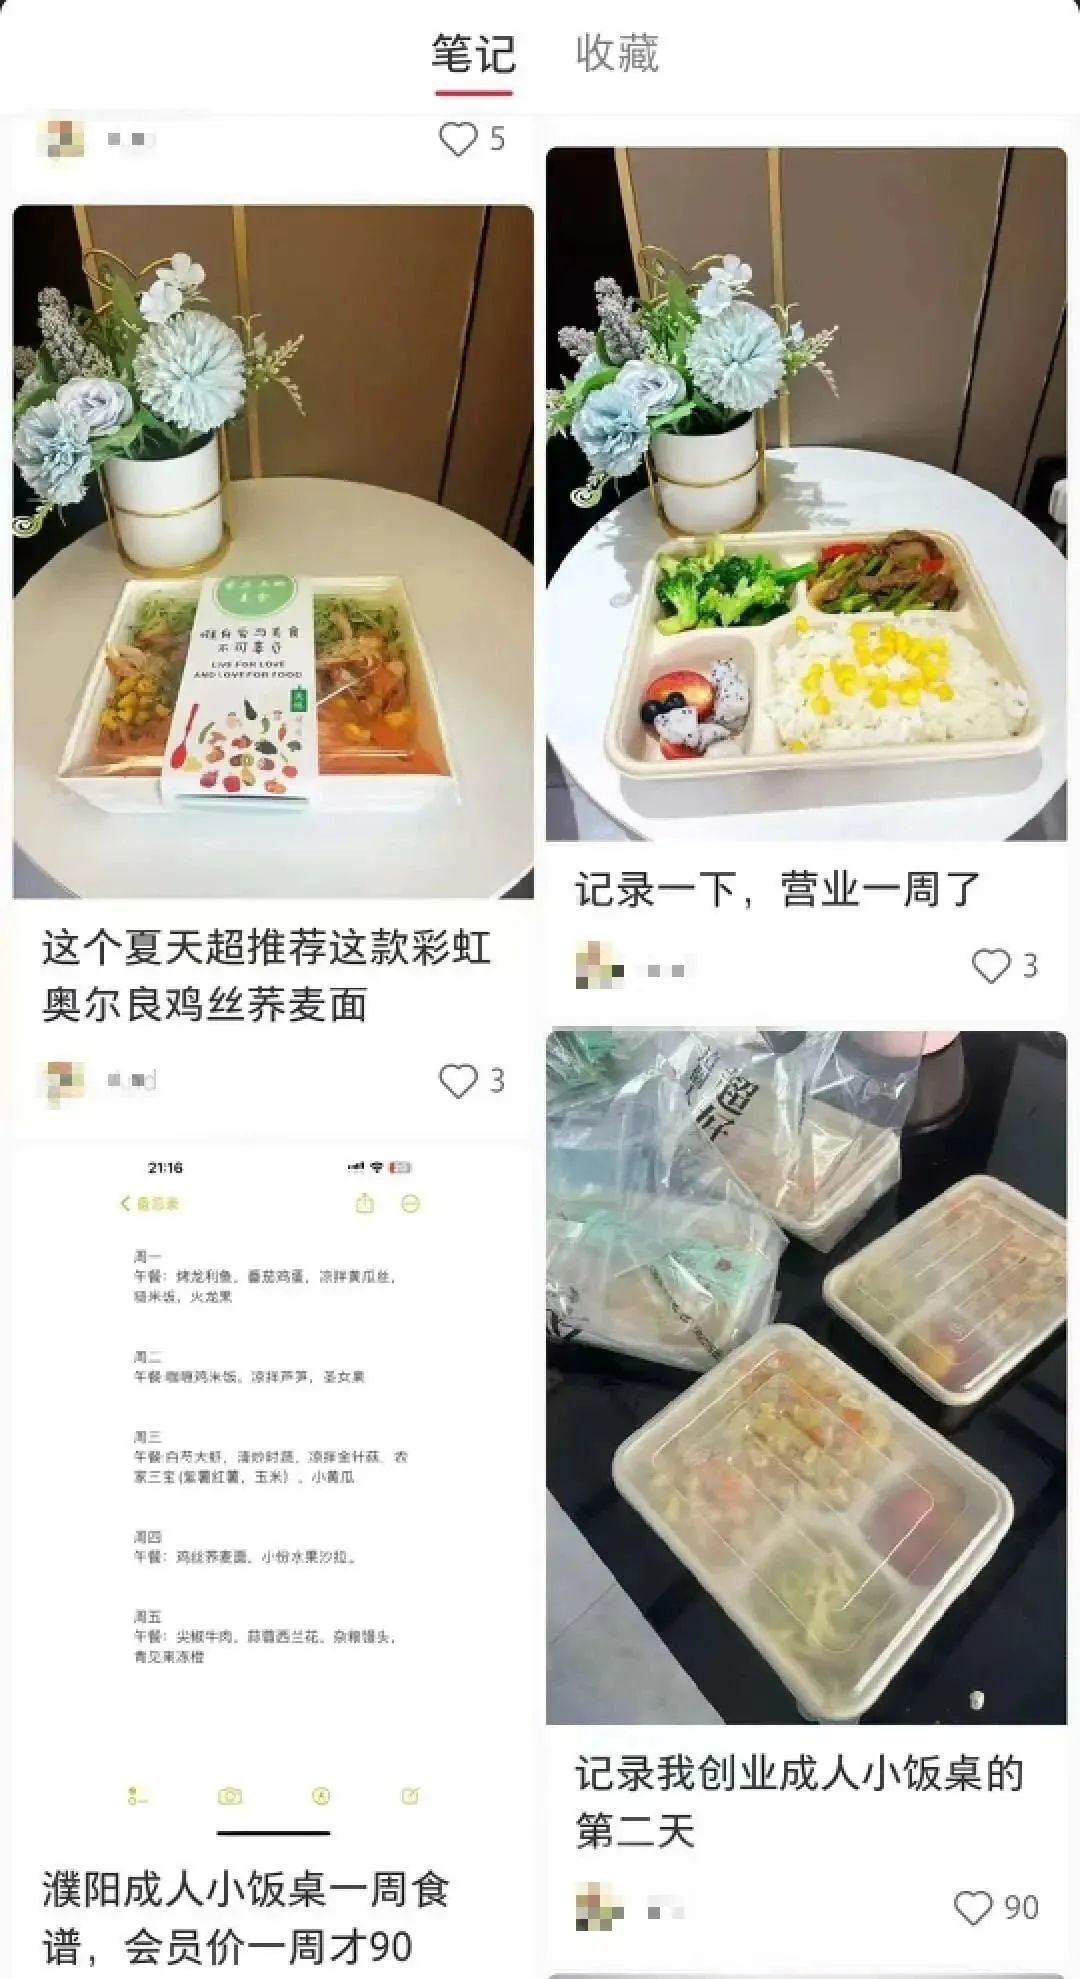 图/玥玥在小红书上发布笔记记录“成人小饭桌”创业经历